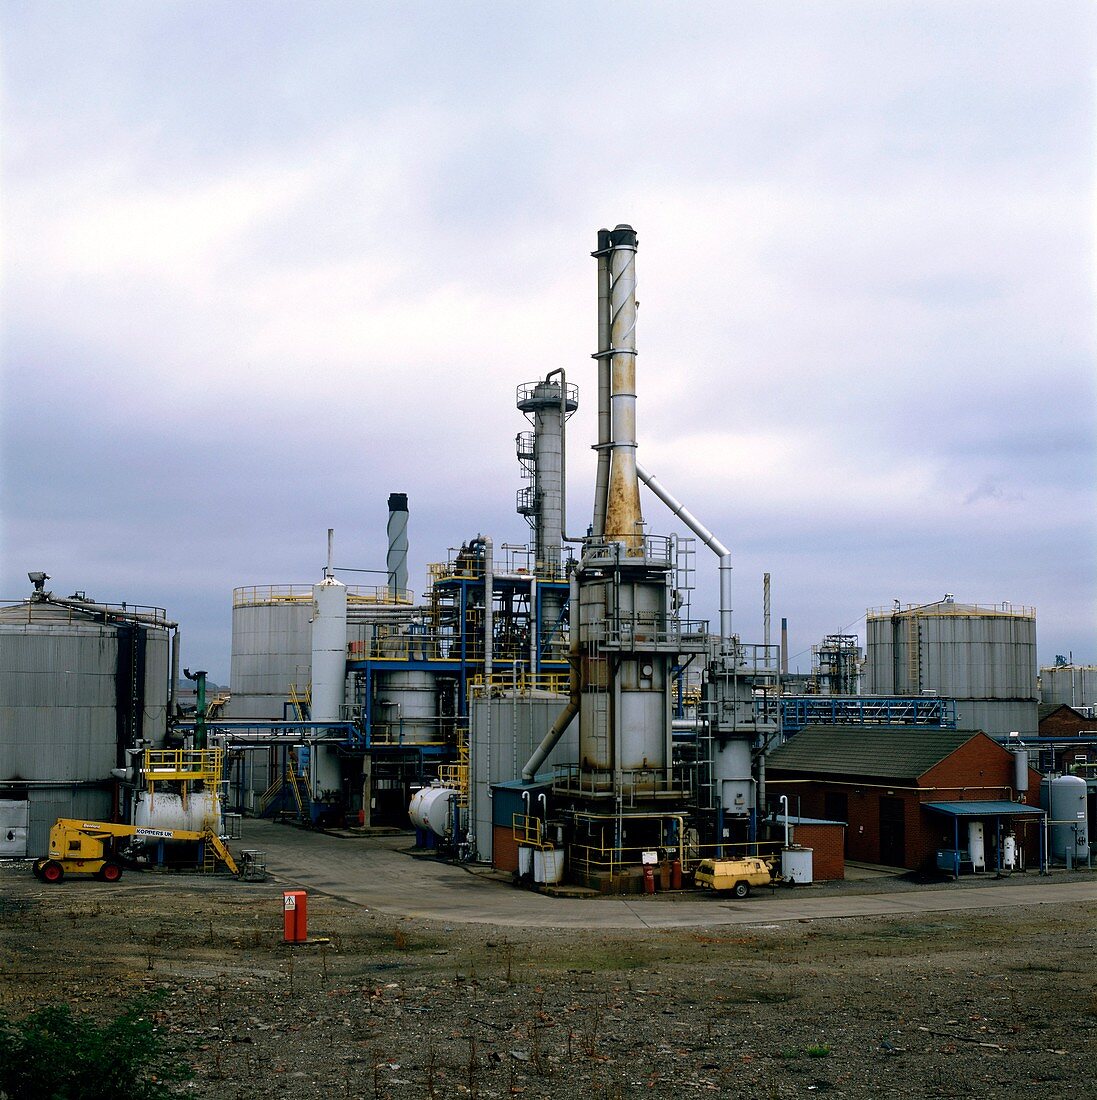 Tar distillation plant